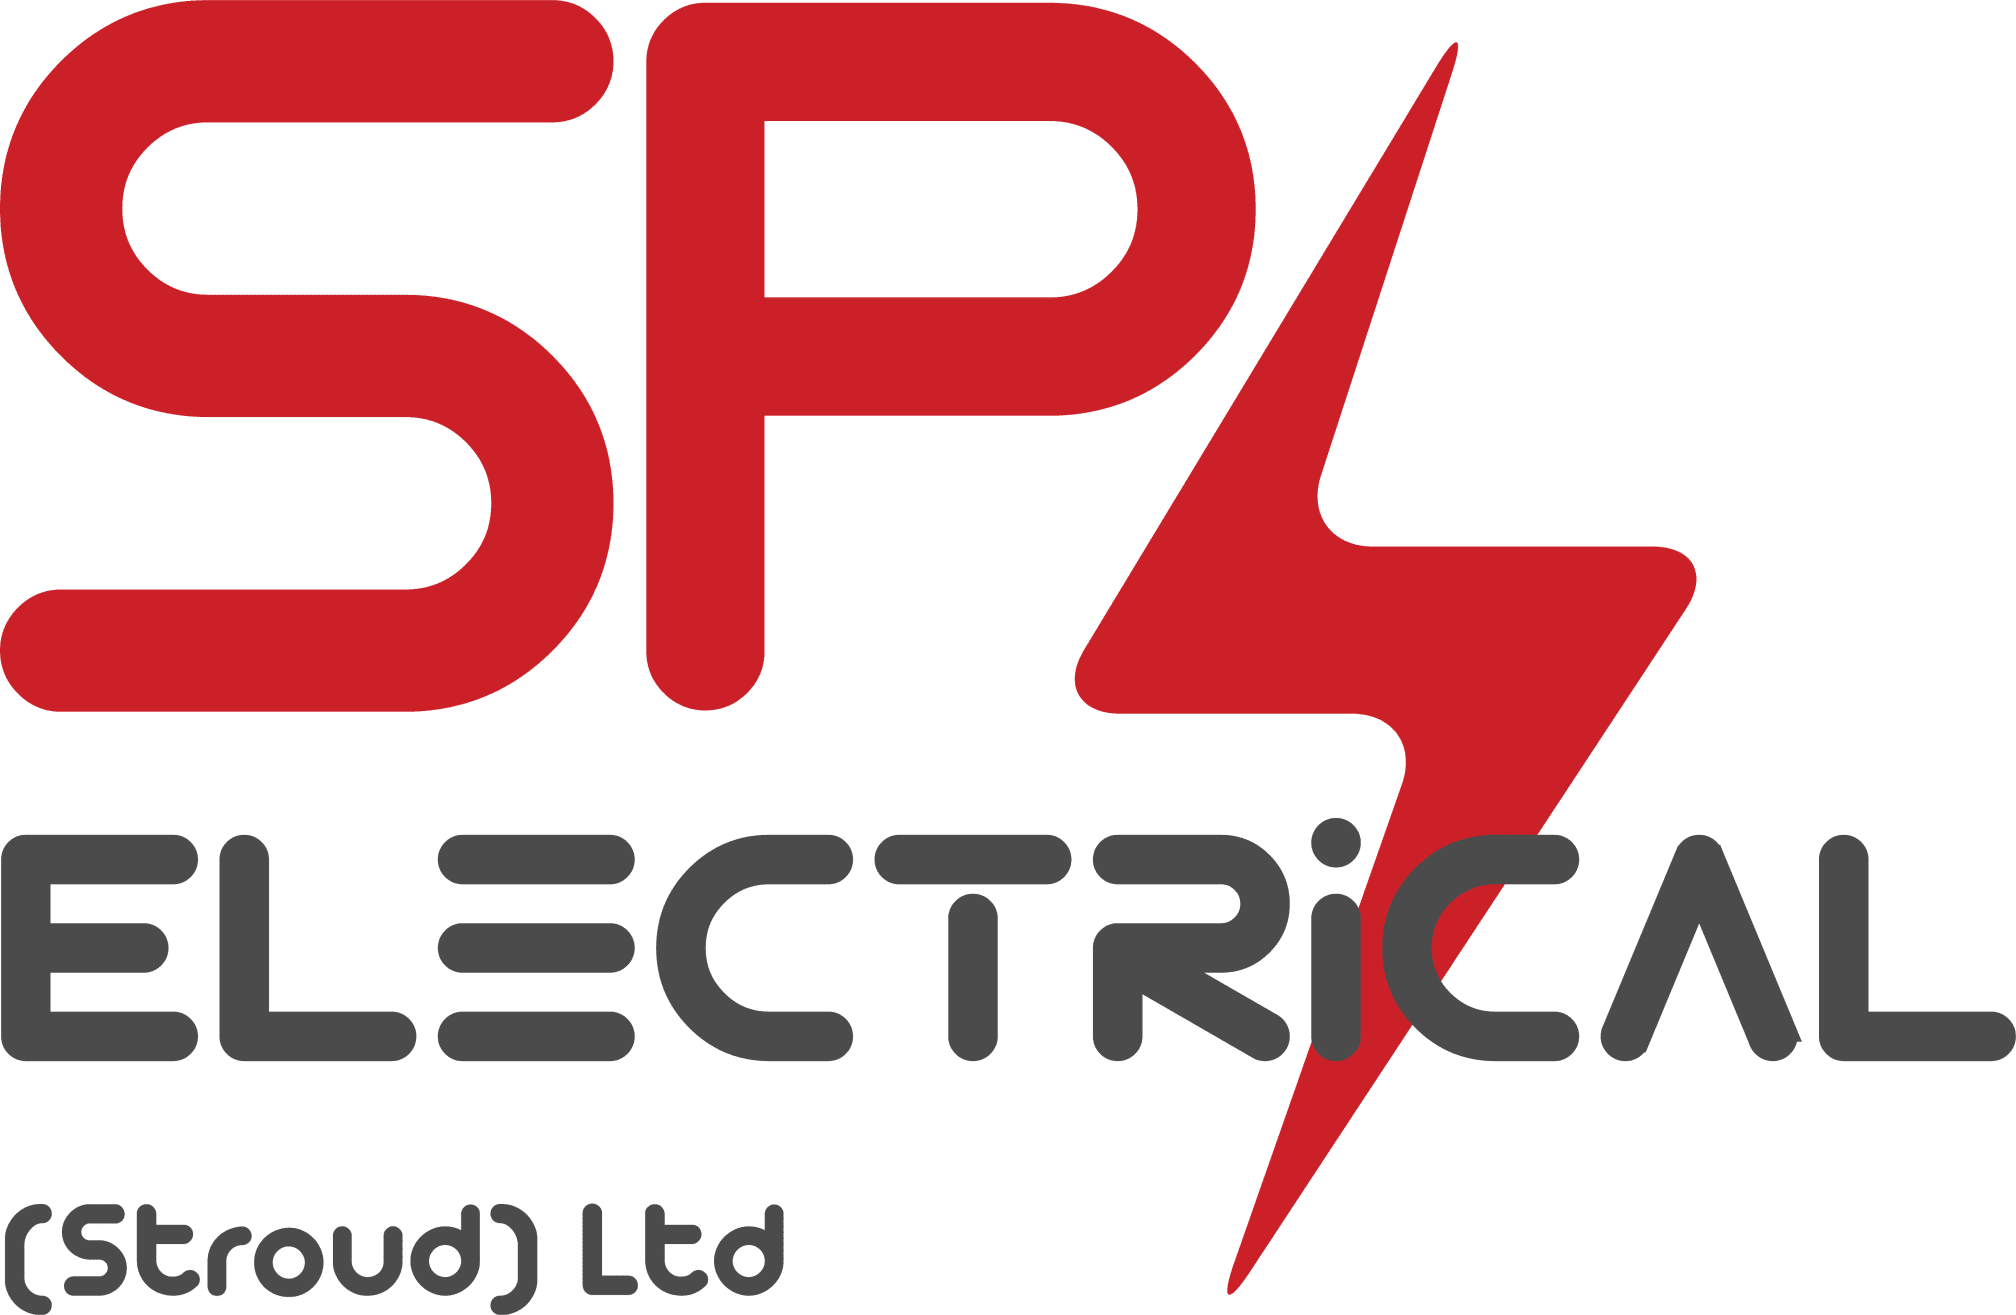 Images S P Electrical Stroud Ltd